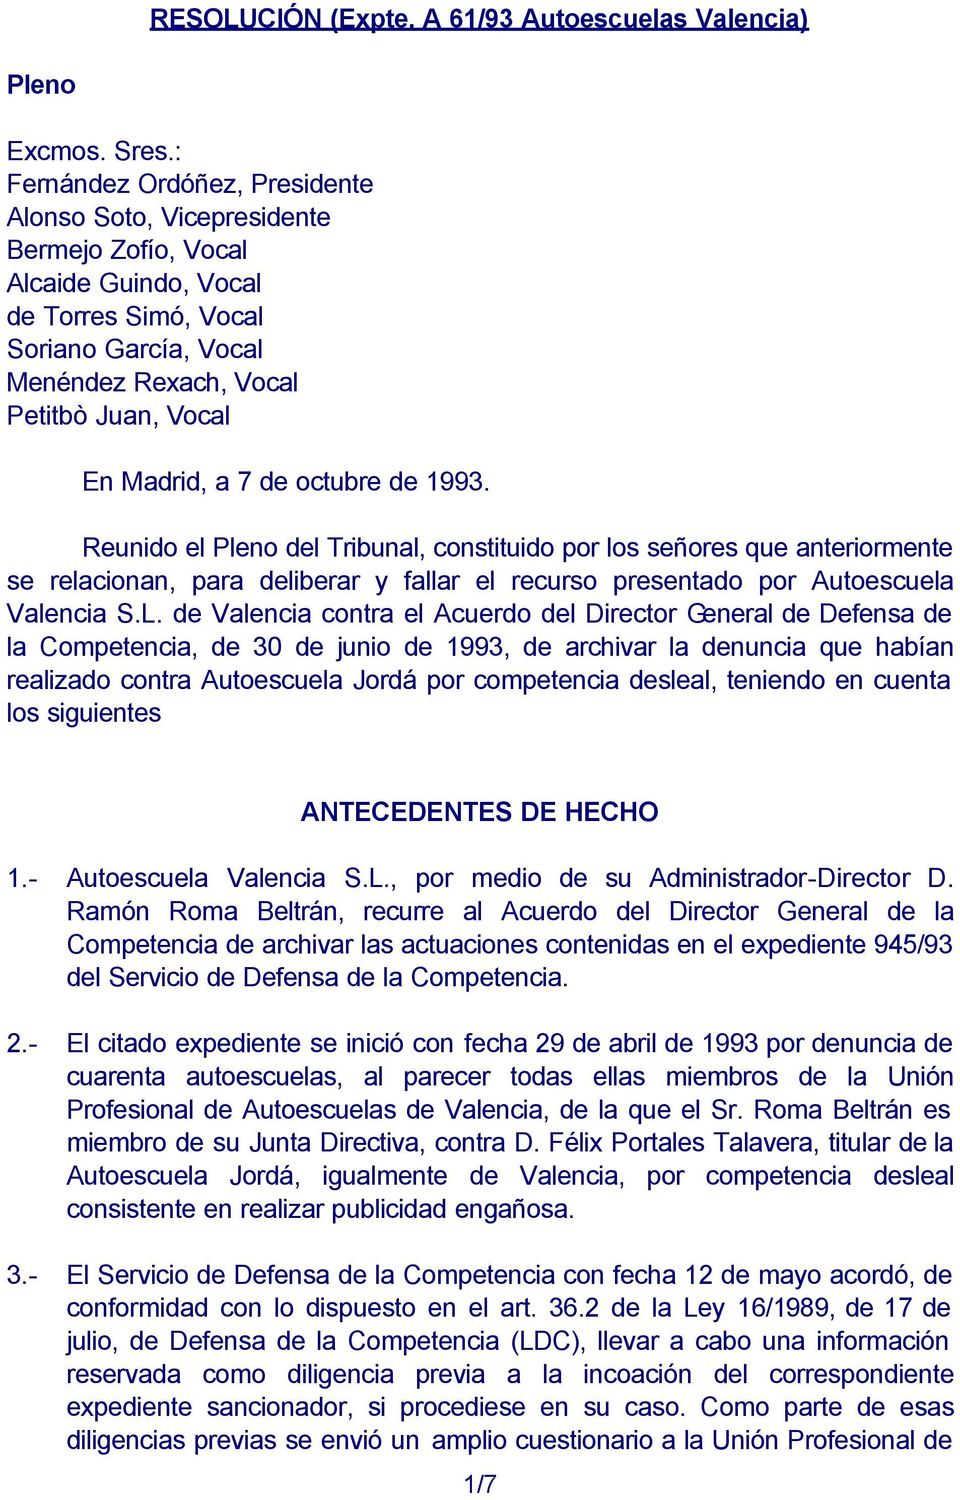 Madrid, a 7 de octubre de 1993. Reunido el Pleno del Tribunal, constituido por los señores que anteriormente se relacionan, para deliberar y fallar el recurso presentado por Autoescuela Valencia S.L.